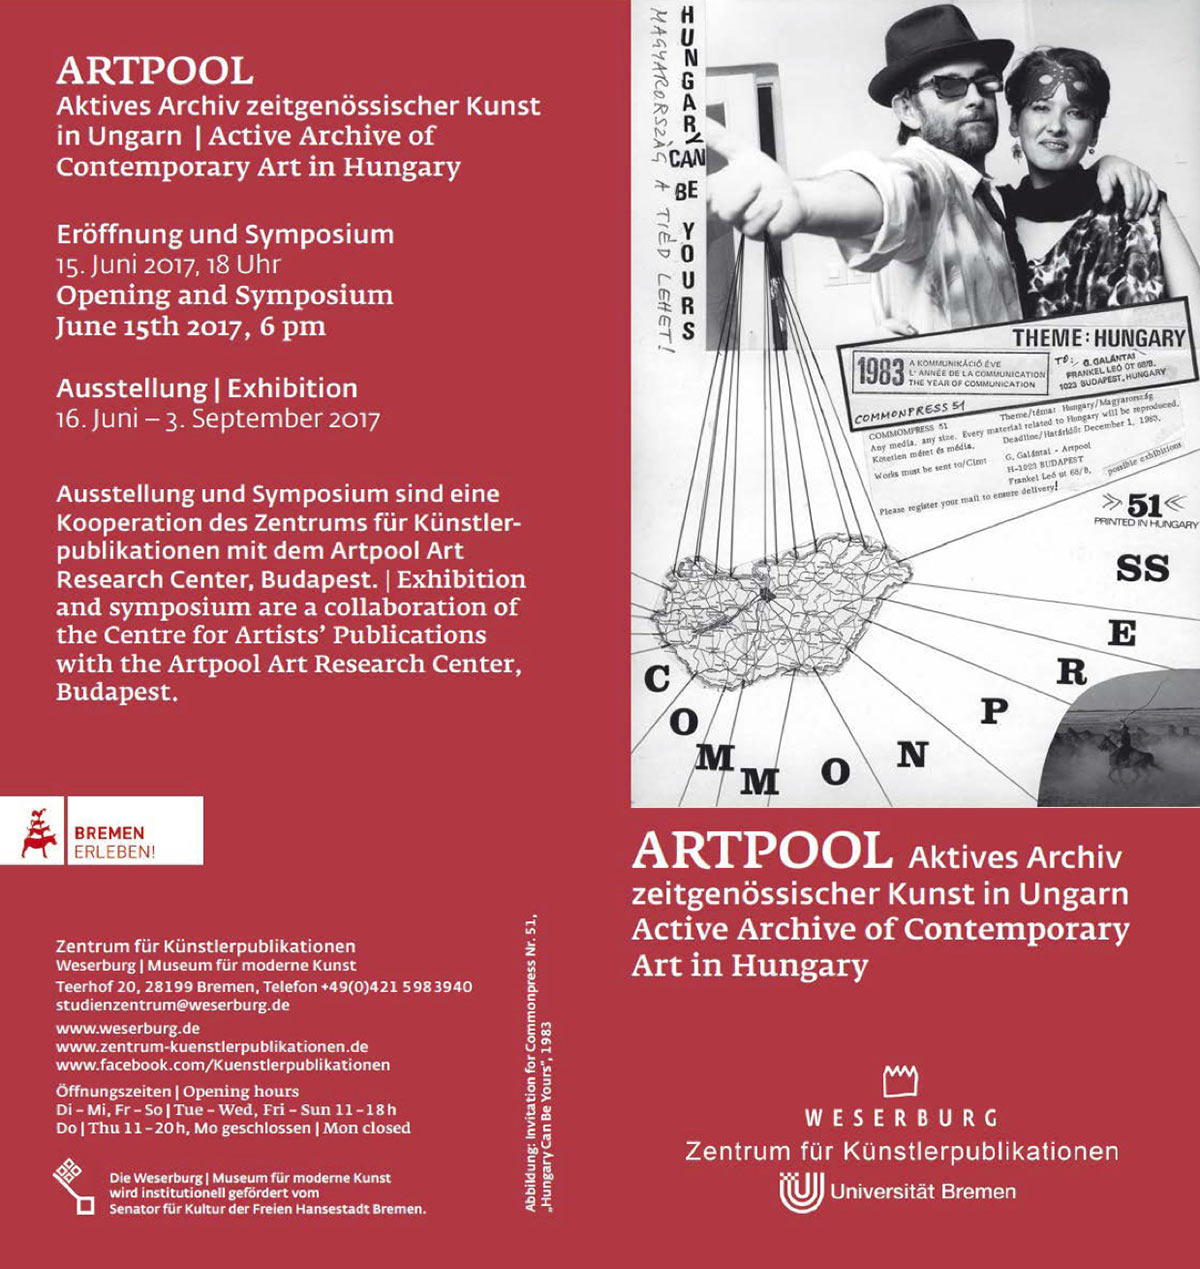 Artpool: Aktives Archiv zeitgenössischer Kunst in Ungarn flyer, Studienzentrum für Künstlerpublikationen, Bremen, Germany, 2017.